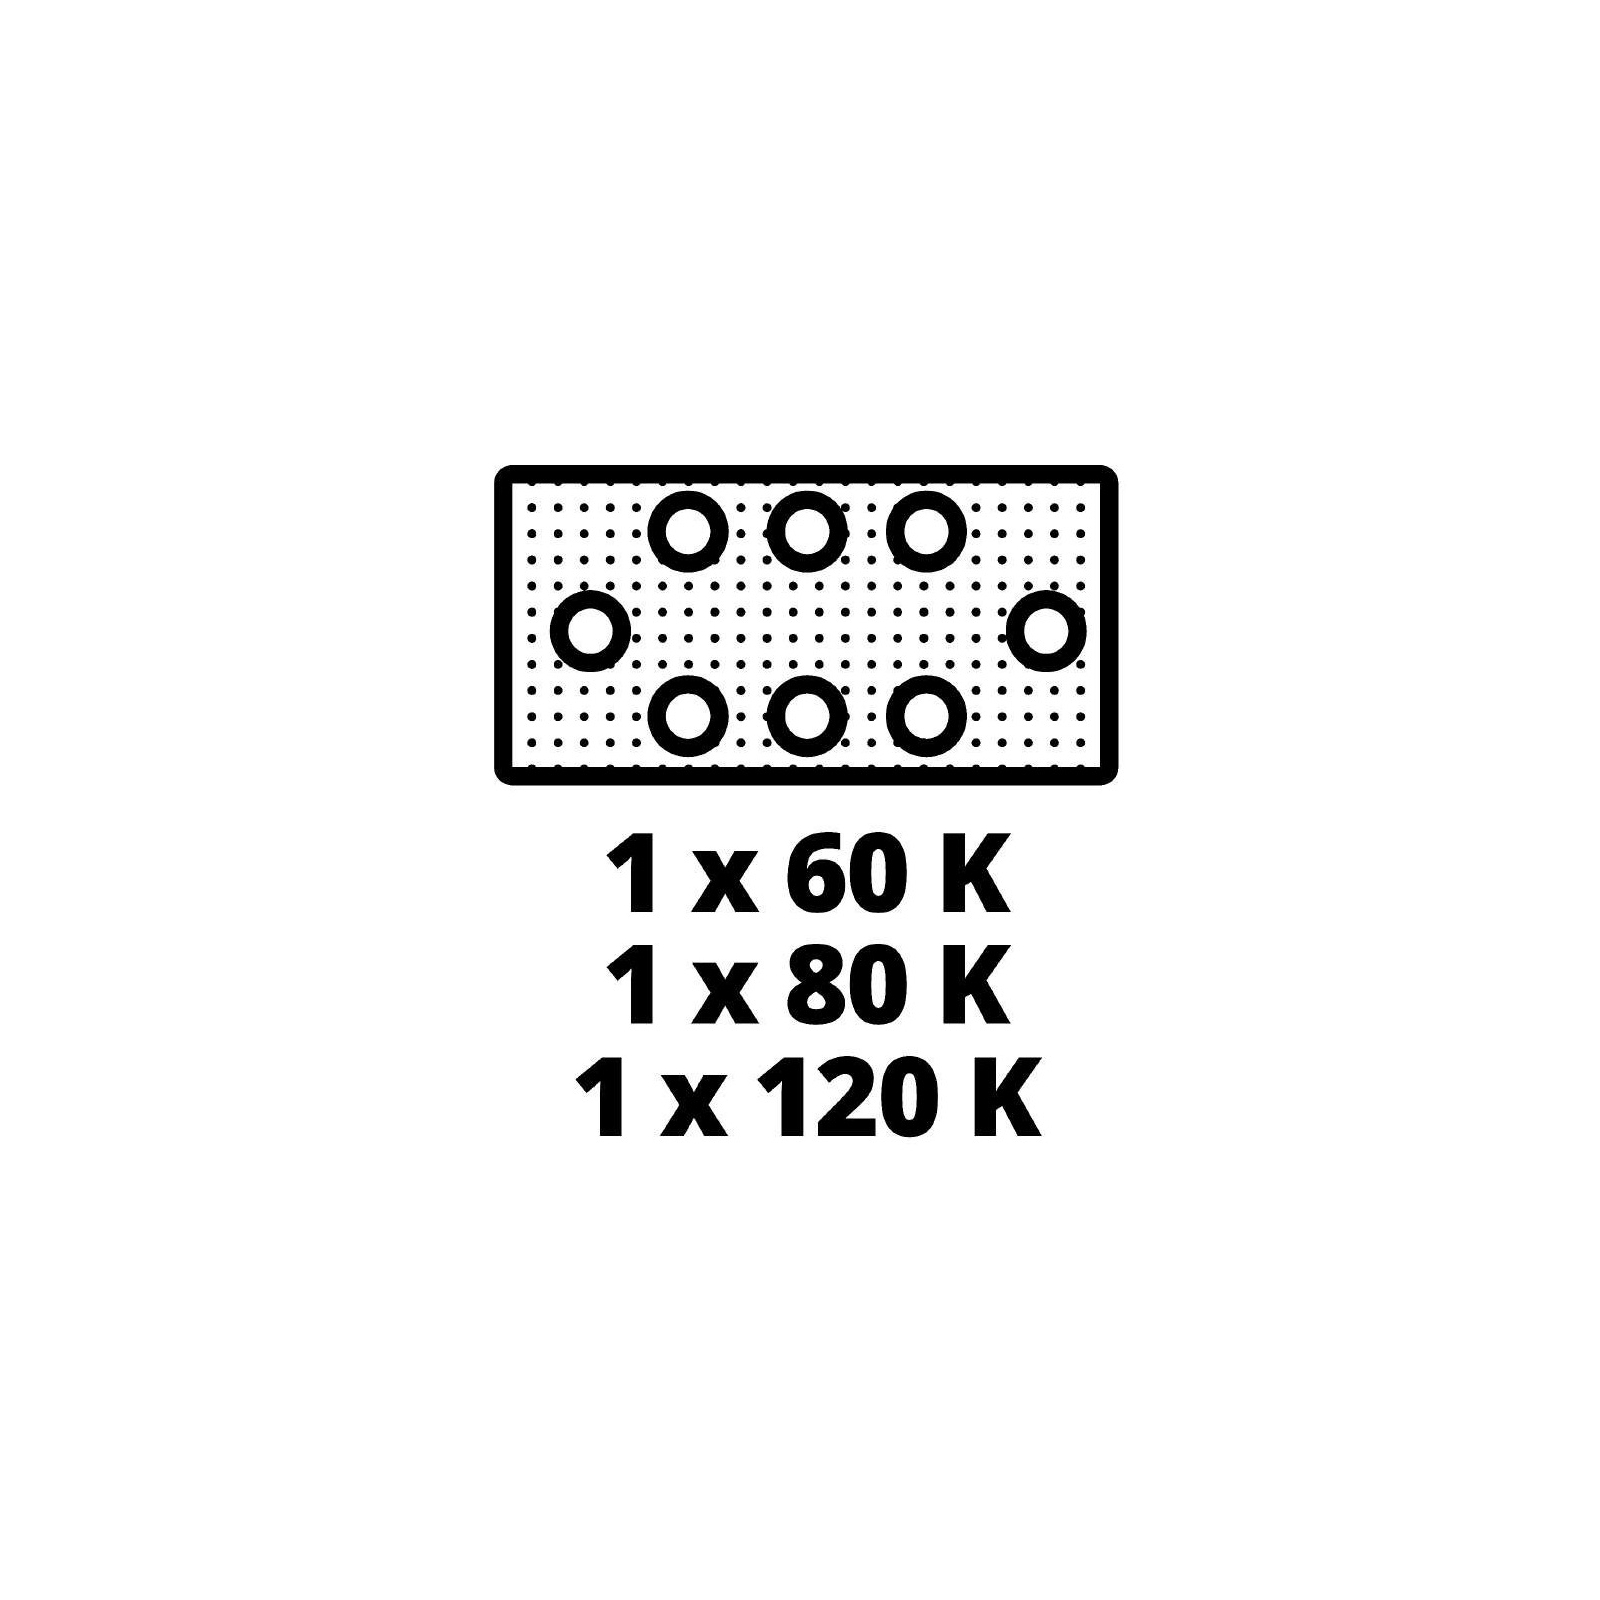 Шлифовальная машина Einhell TE-OS 18/230 Li - Solo, PXC, 18В, 230х115 мм (без АКБ и ЗУ) (4460720) изображение 11